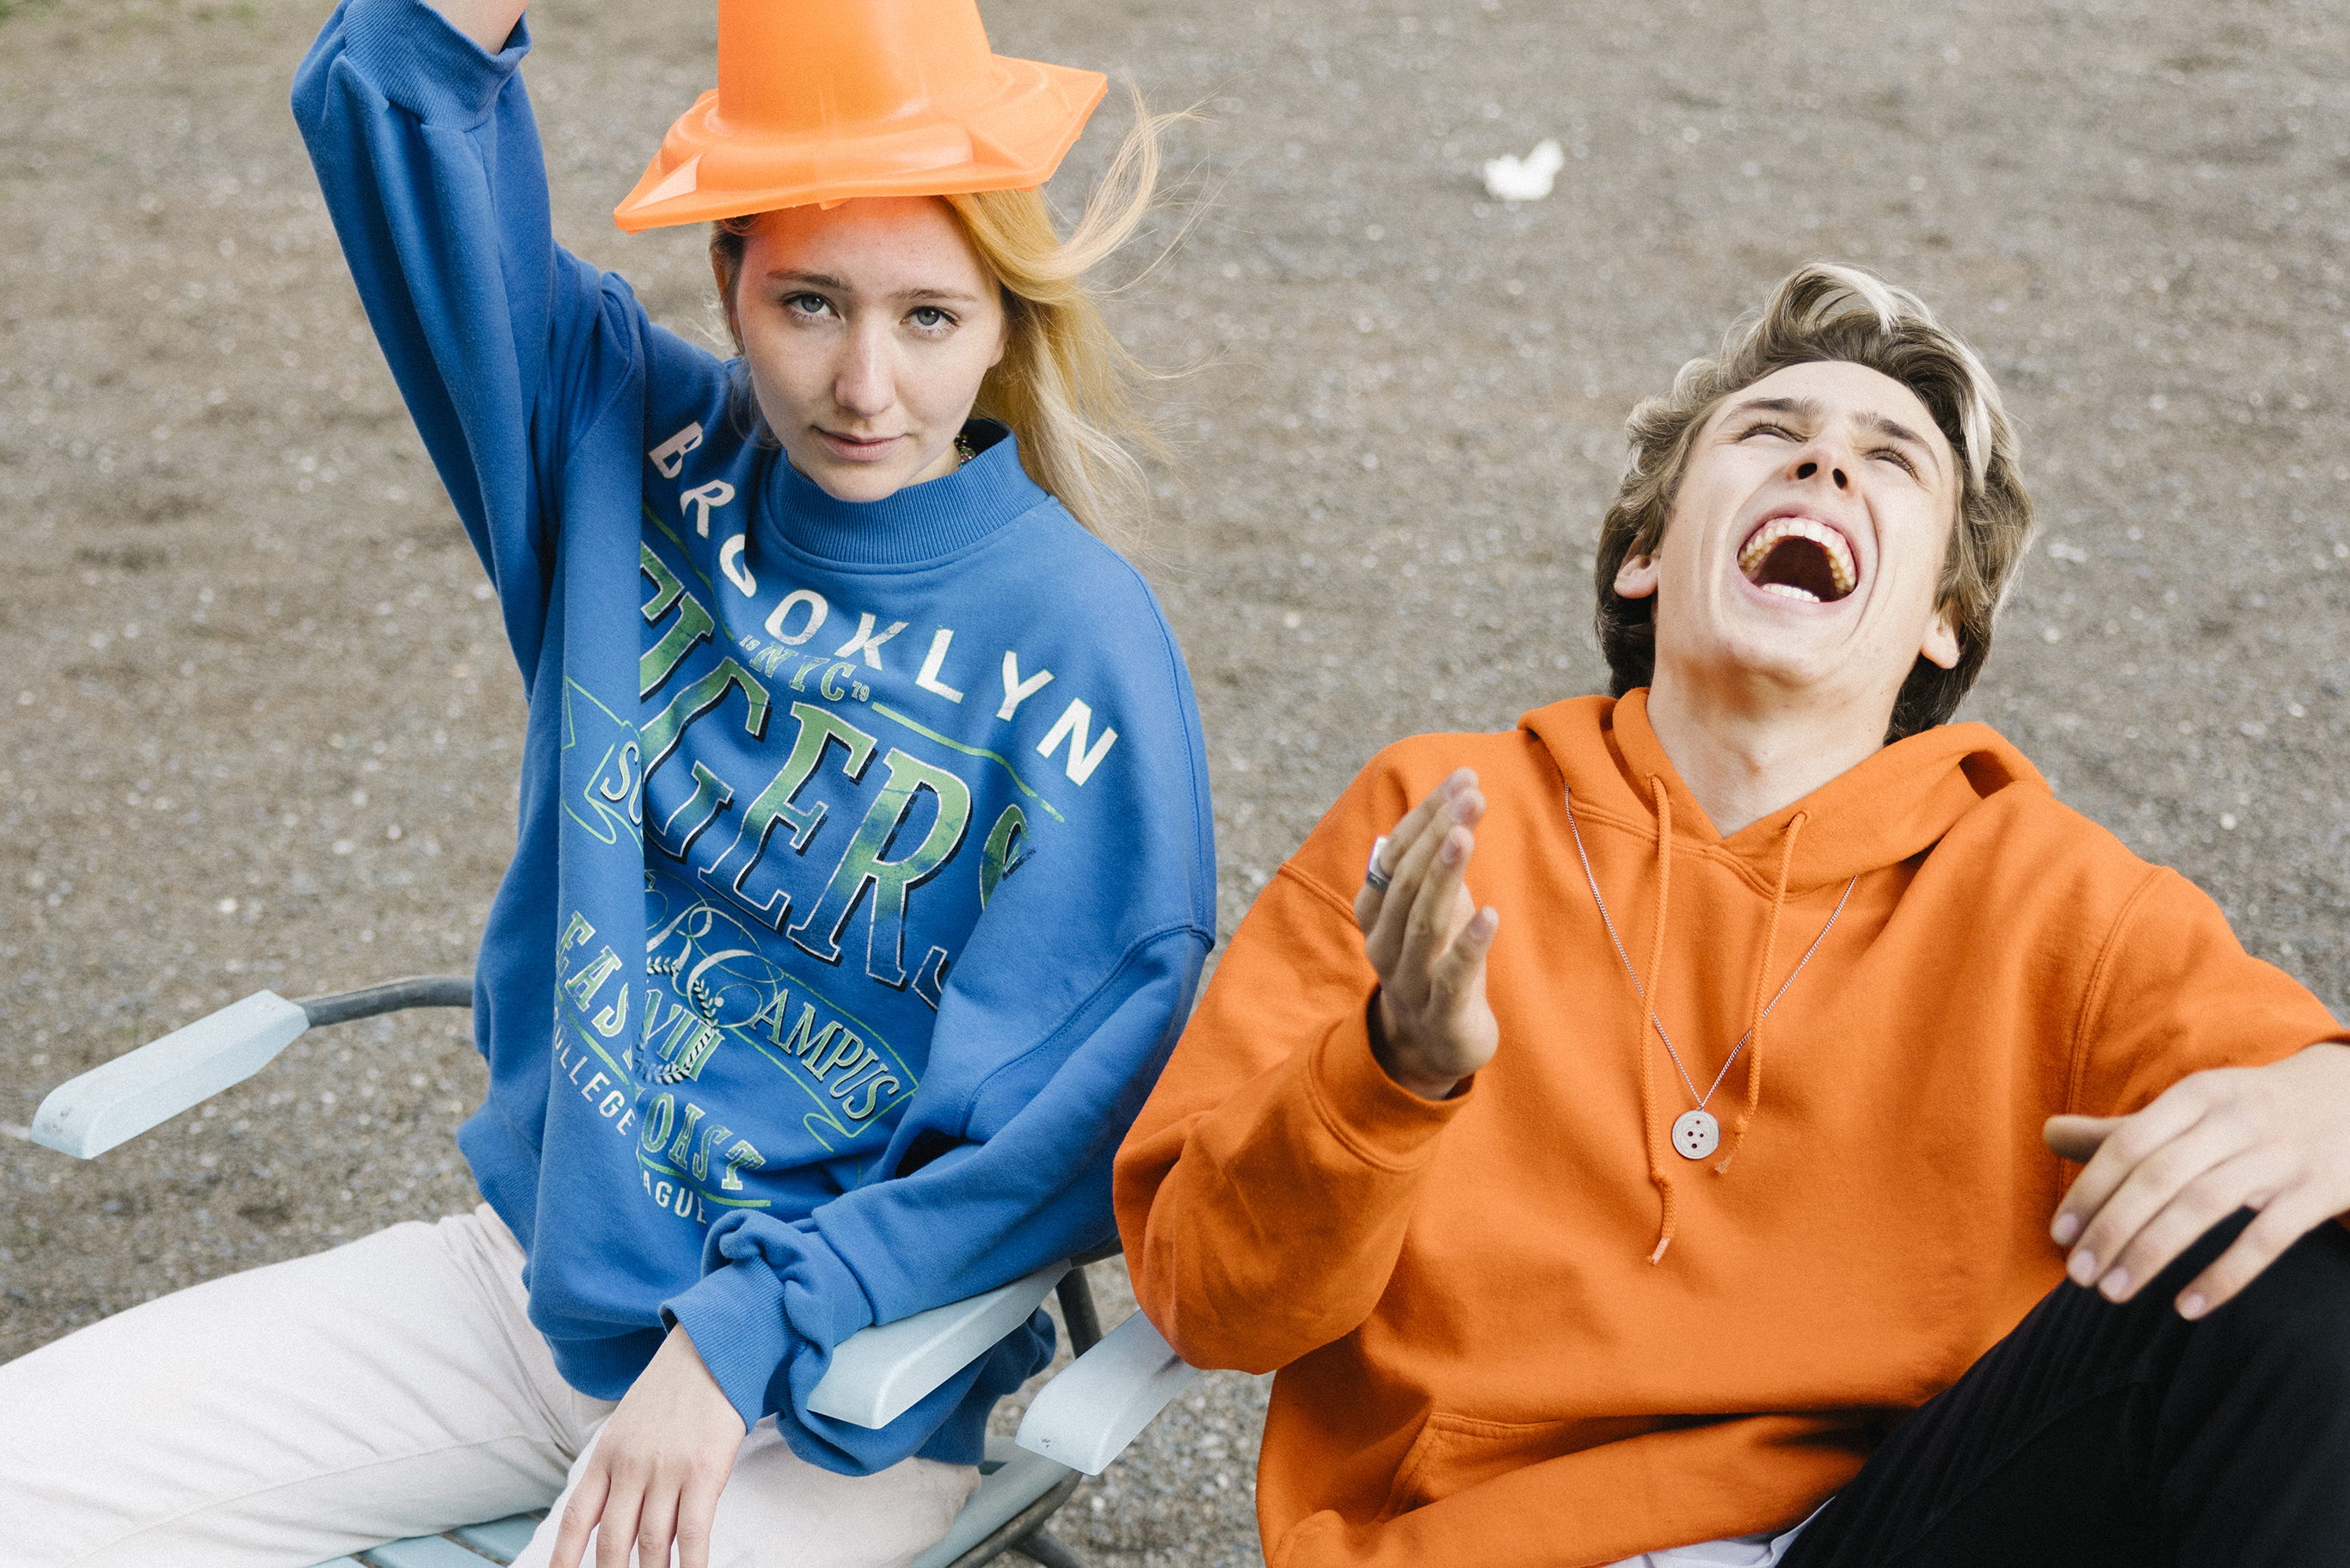 Un ragazzo ride sfrenatamente guardando in alto, mentre una ragazza guarda nella telecamera con un cono stradale a mo’ di cappello.